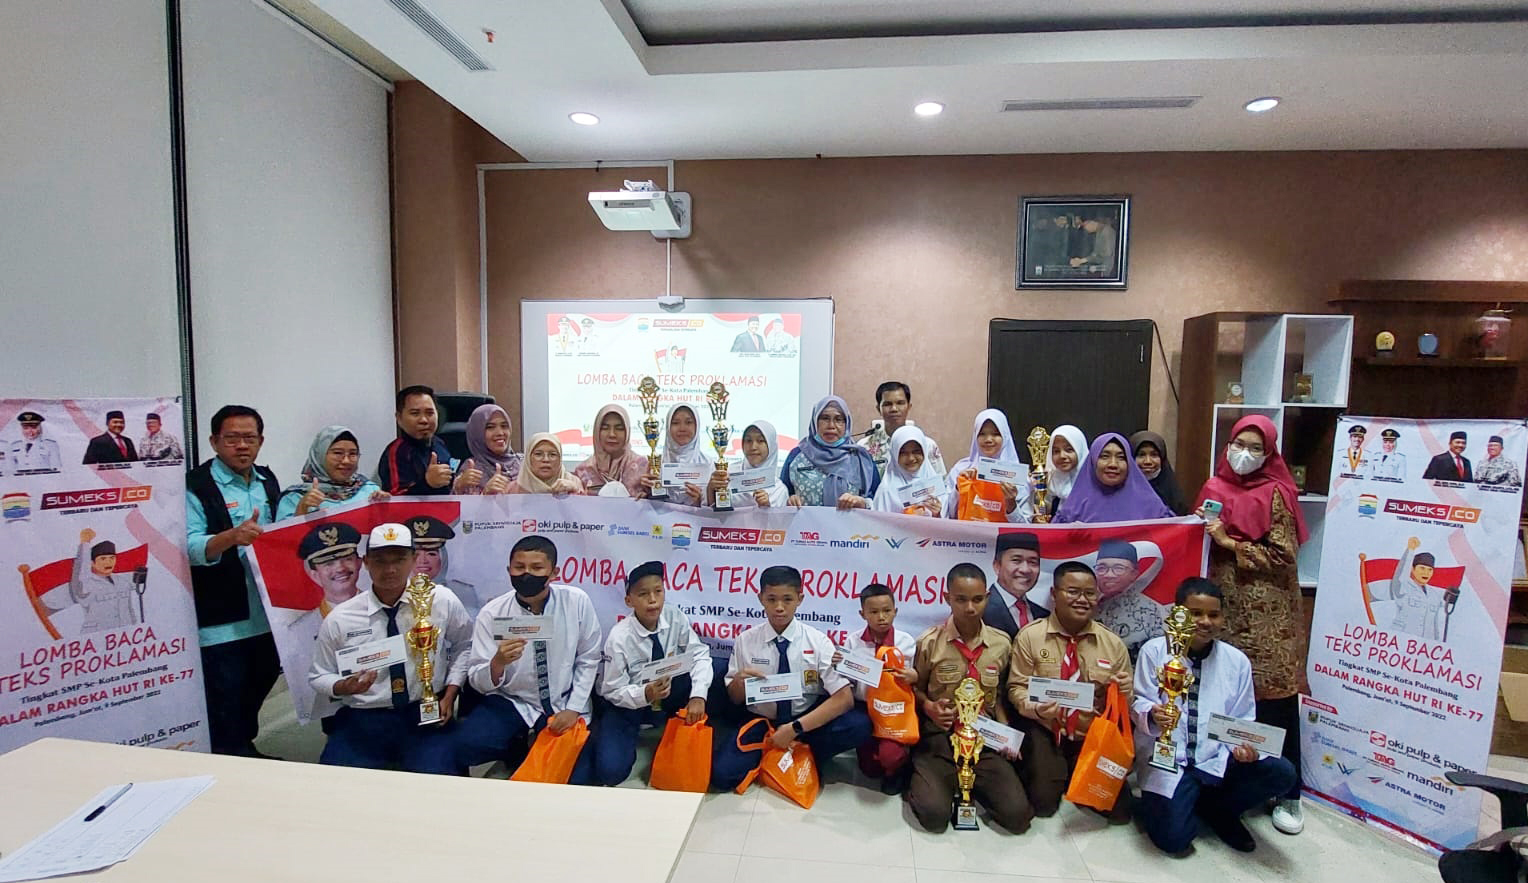  Dinas Pendidikan Kota Palembang dan SUMEKS.CO Serahkan Hadiah Pemenang Lomba Baca Teks Proklamasi 